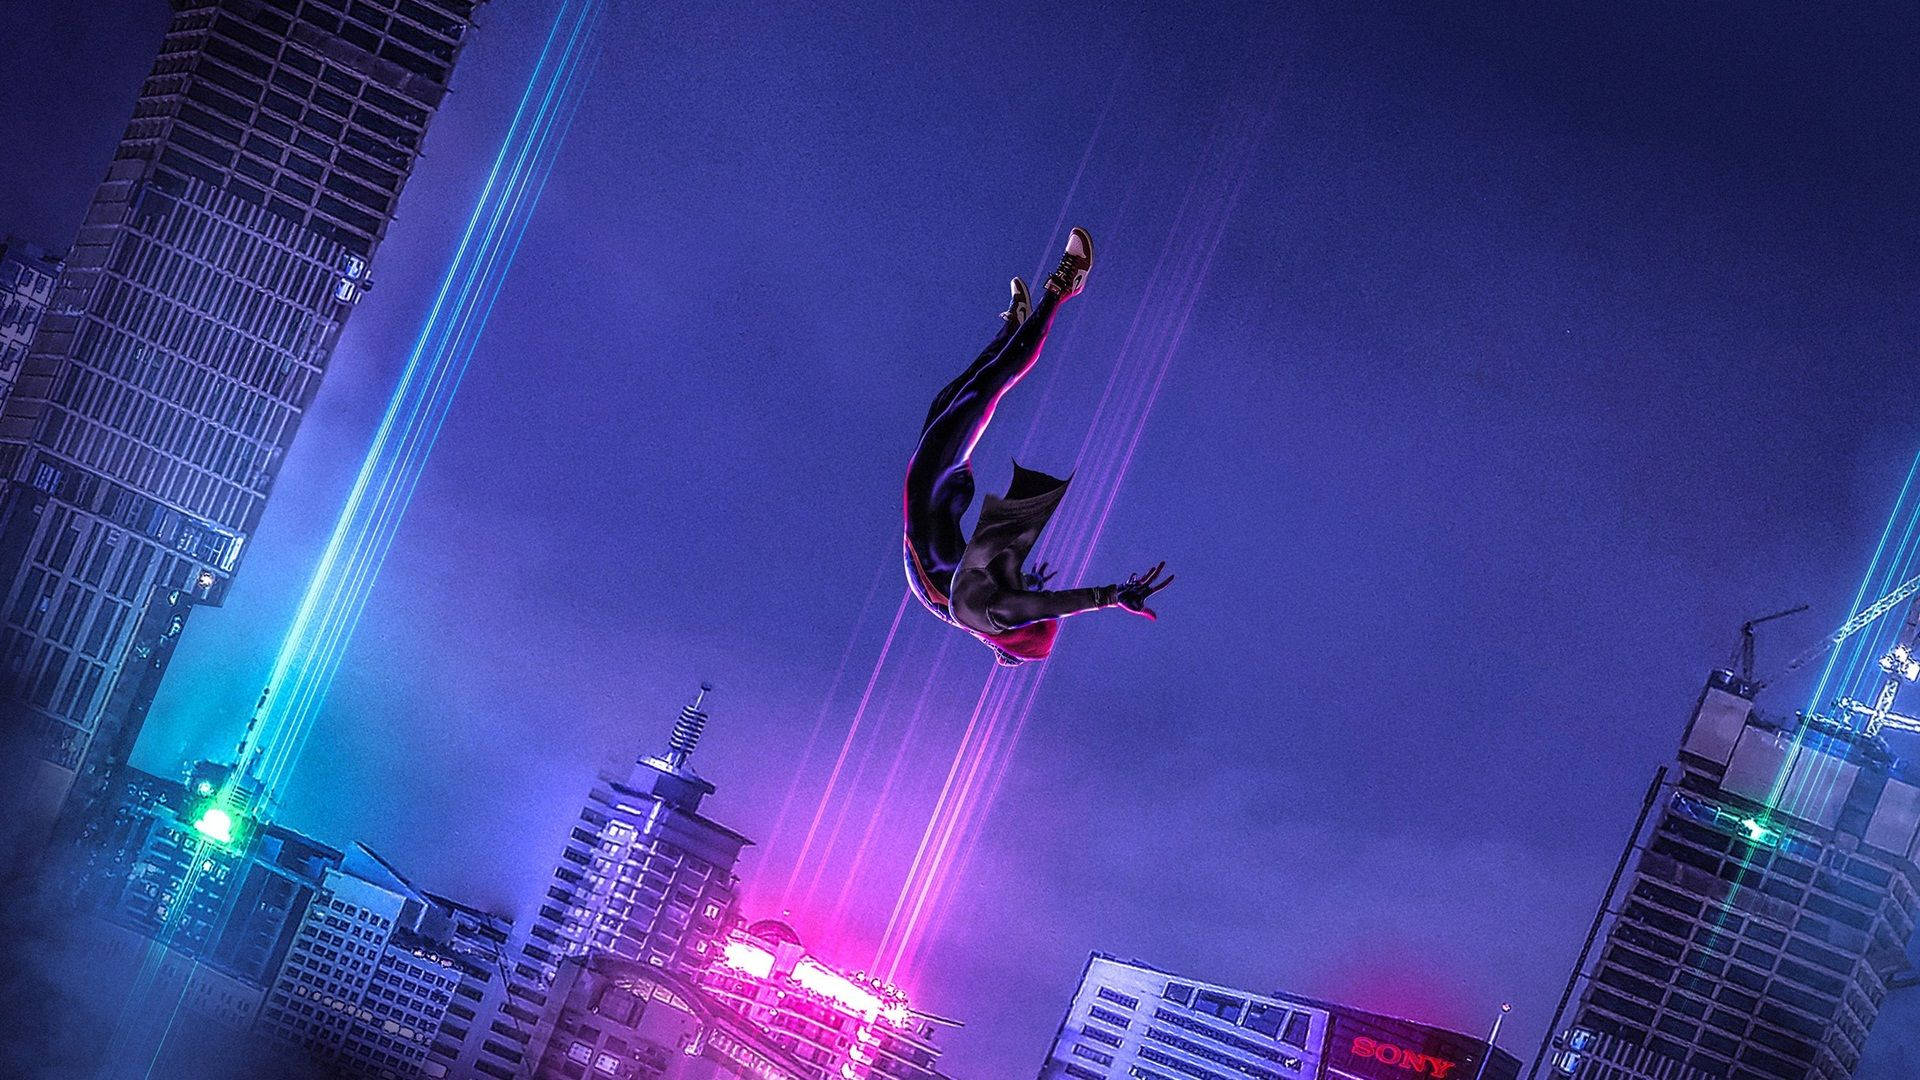 Spider-man Spider-verse Sky Dive Background